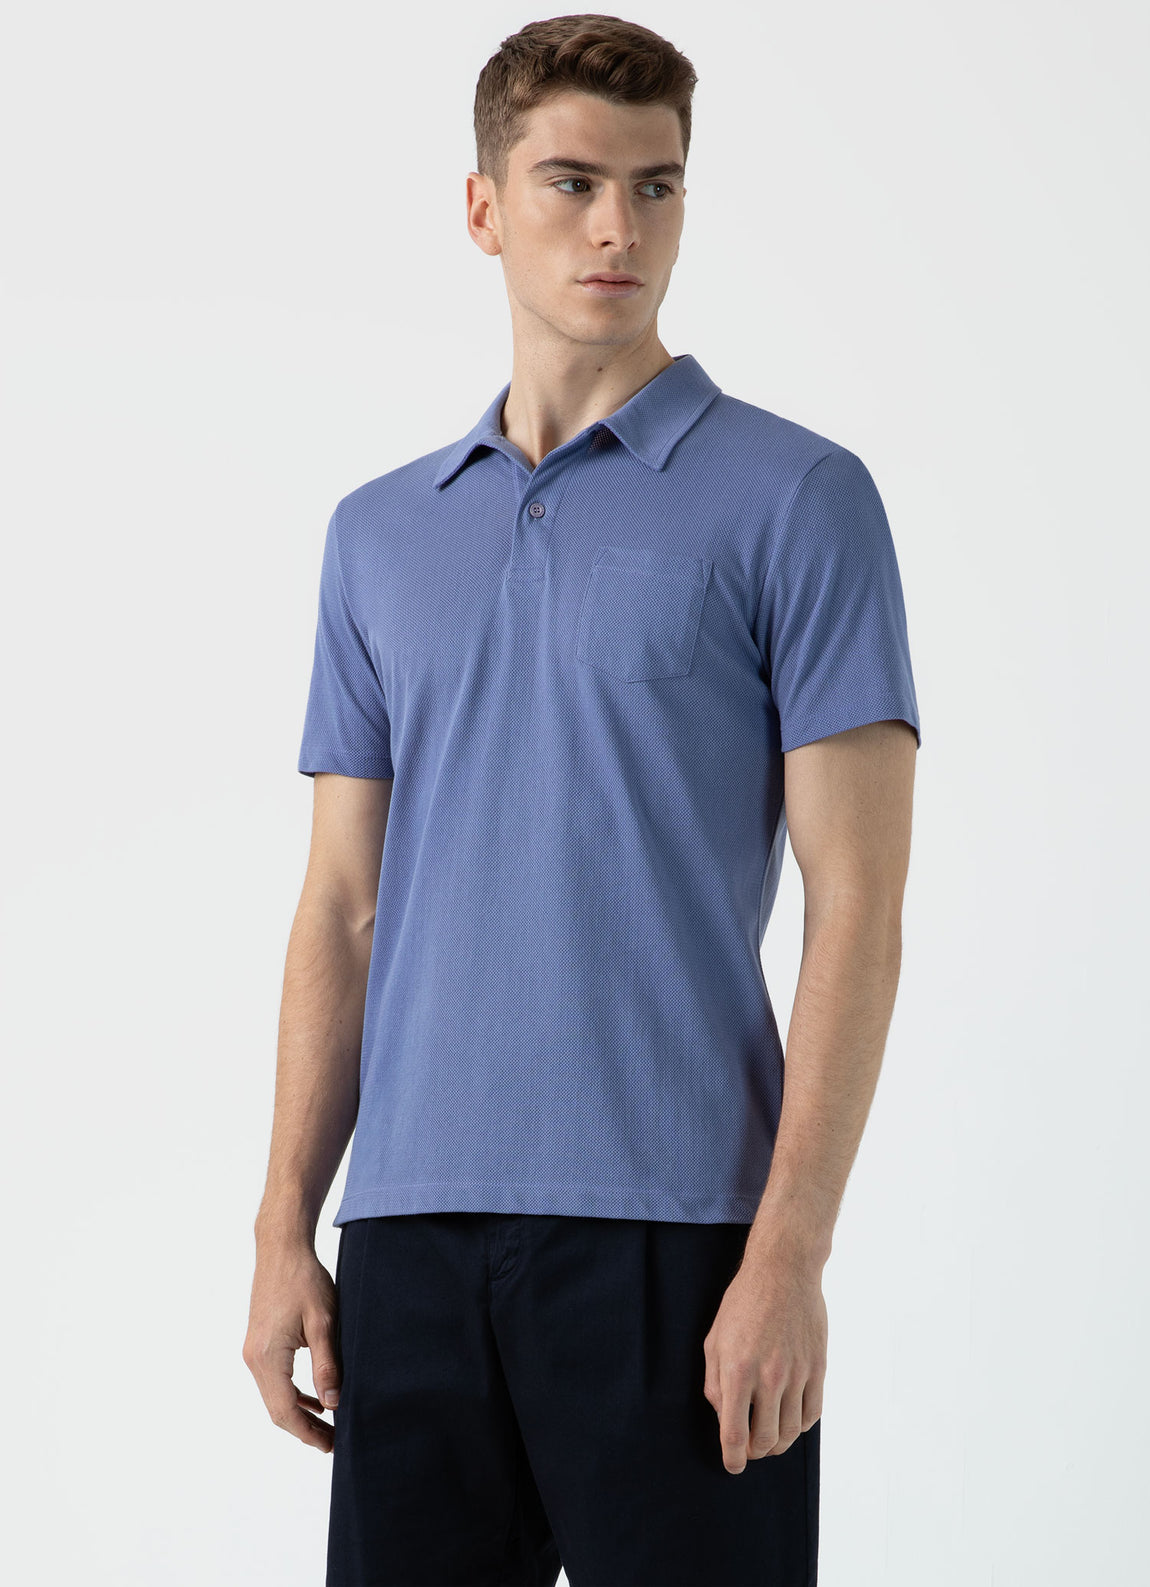 Men's Riviera Polo Shirt in Grape | Sunspel